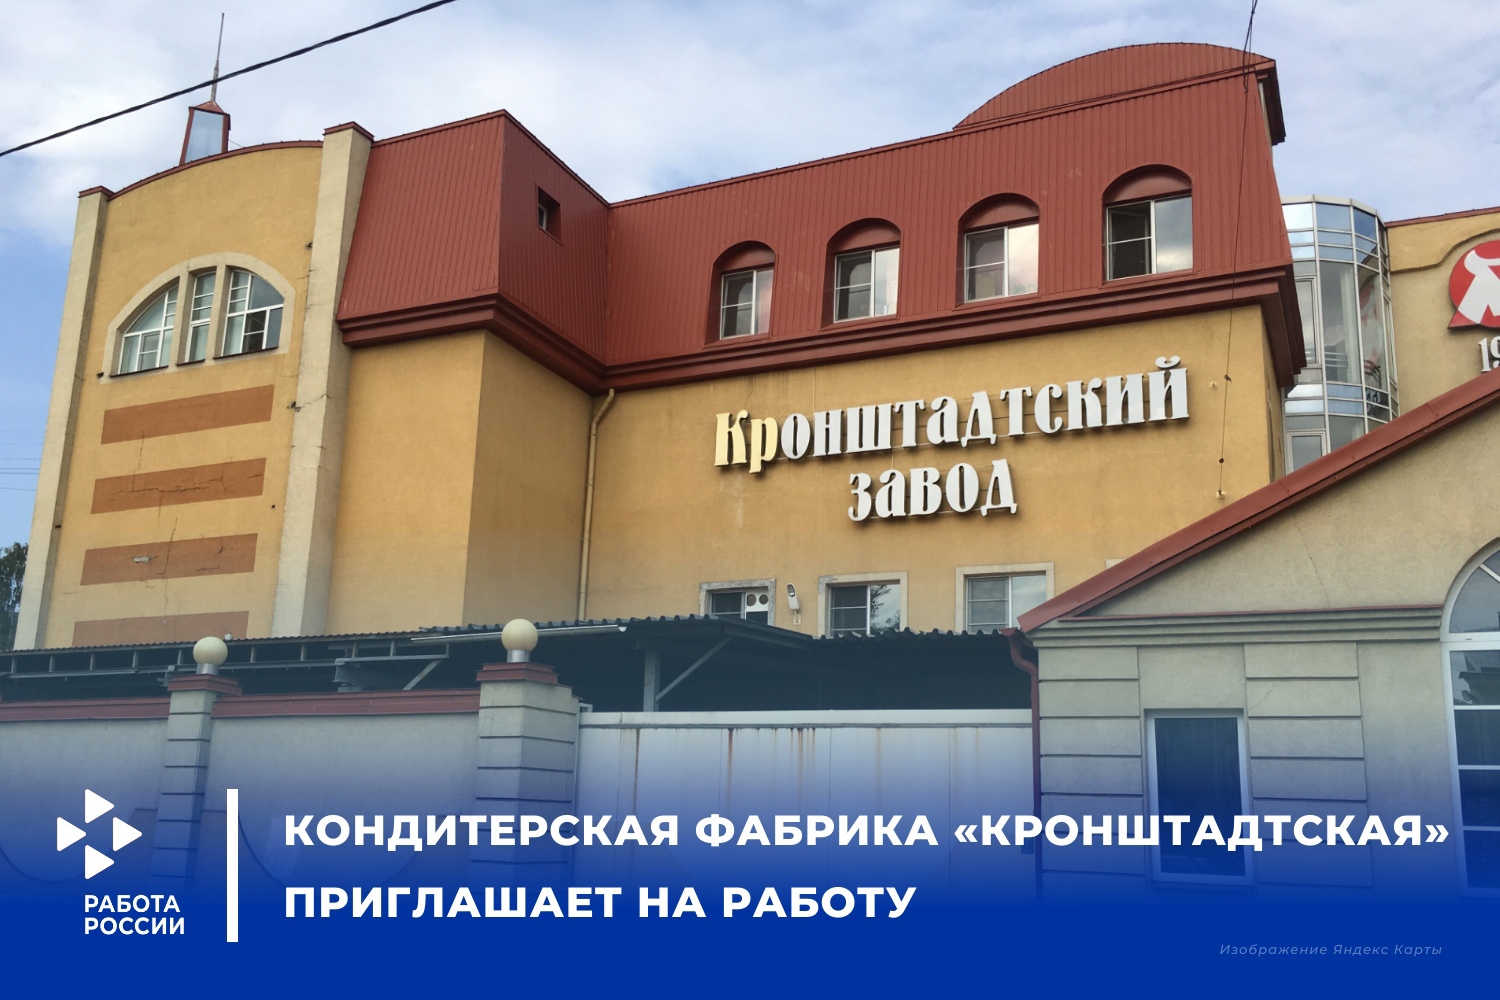 Кондитерская фабрика «Кронштадтская» приглашает на работу в Санкт-Петербург